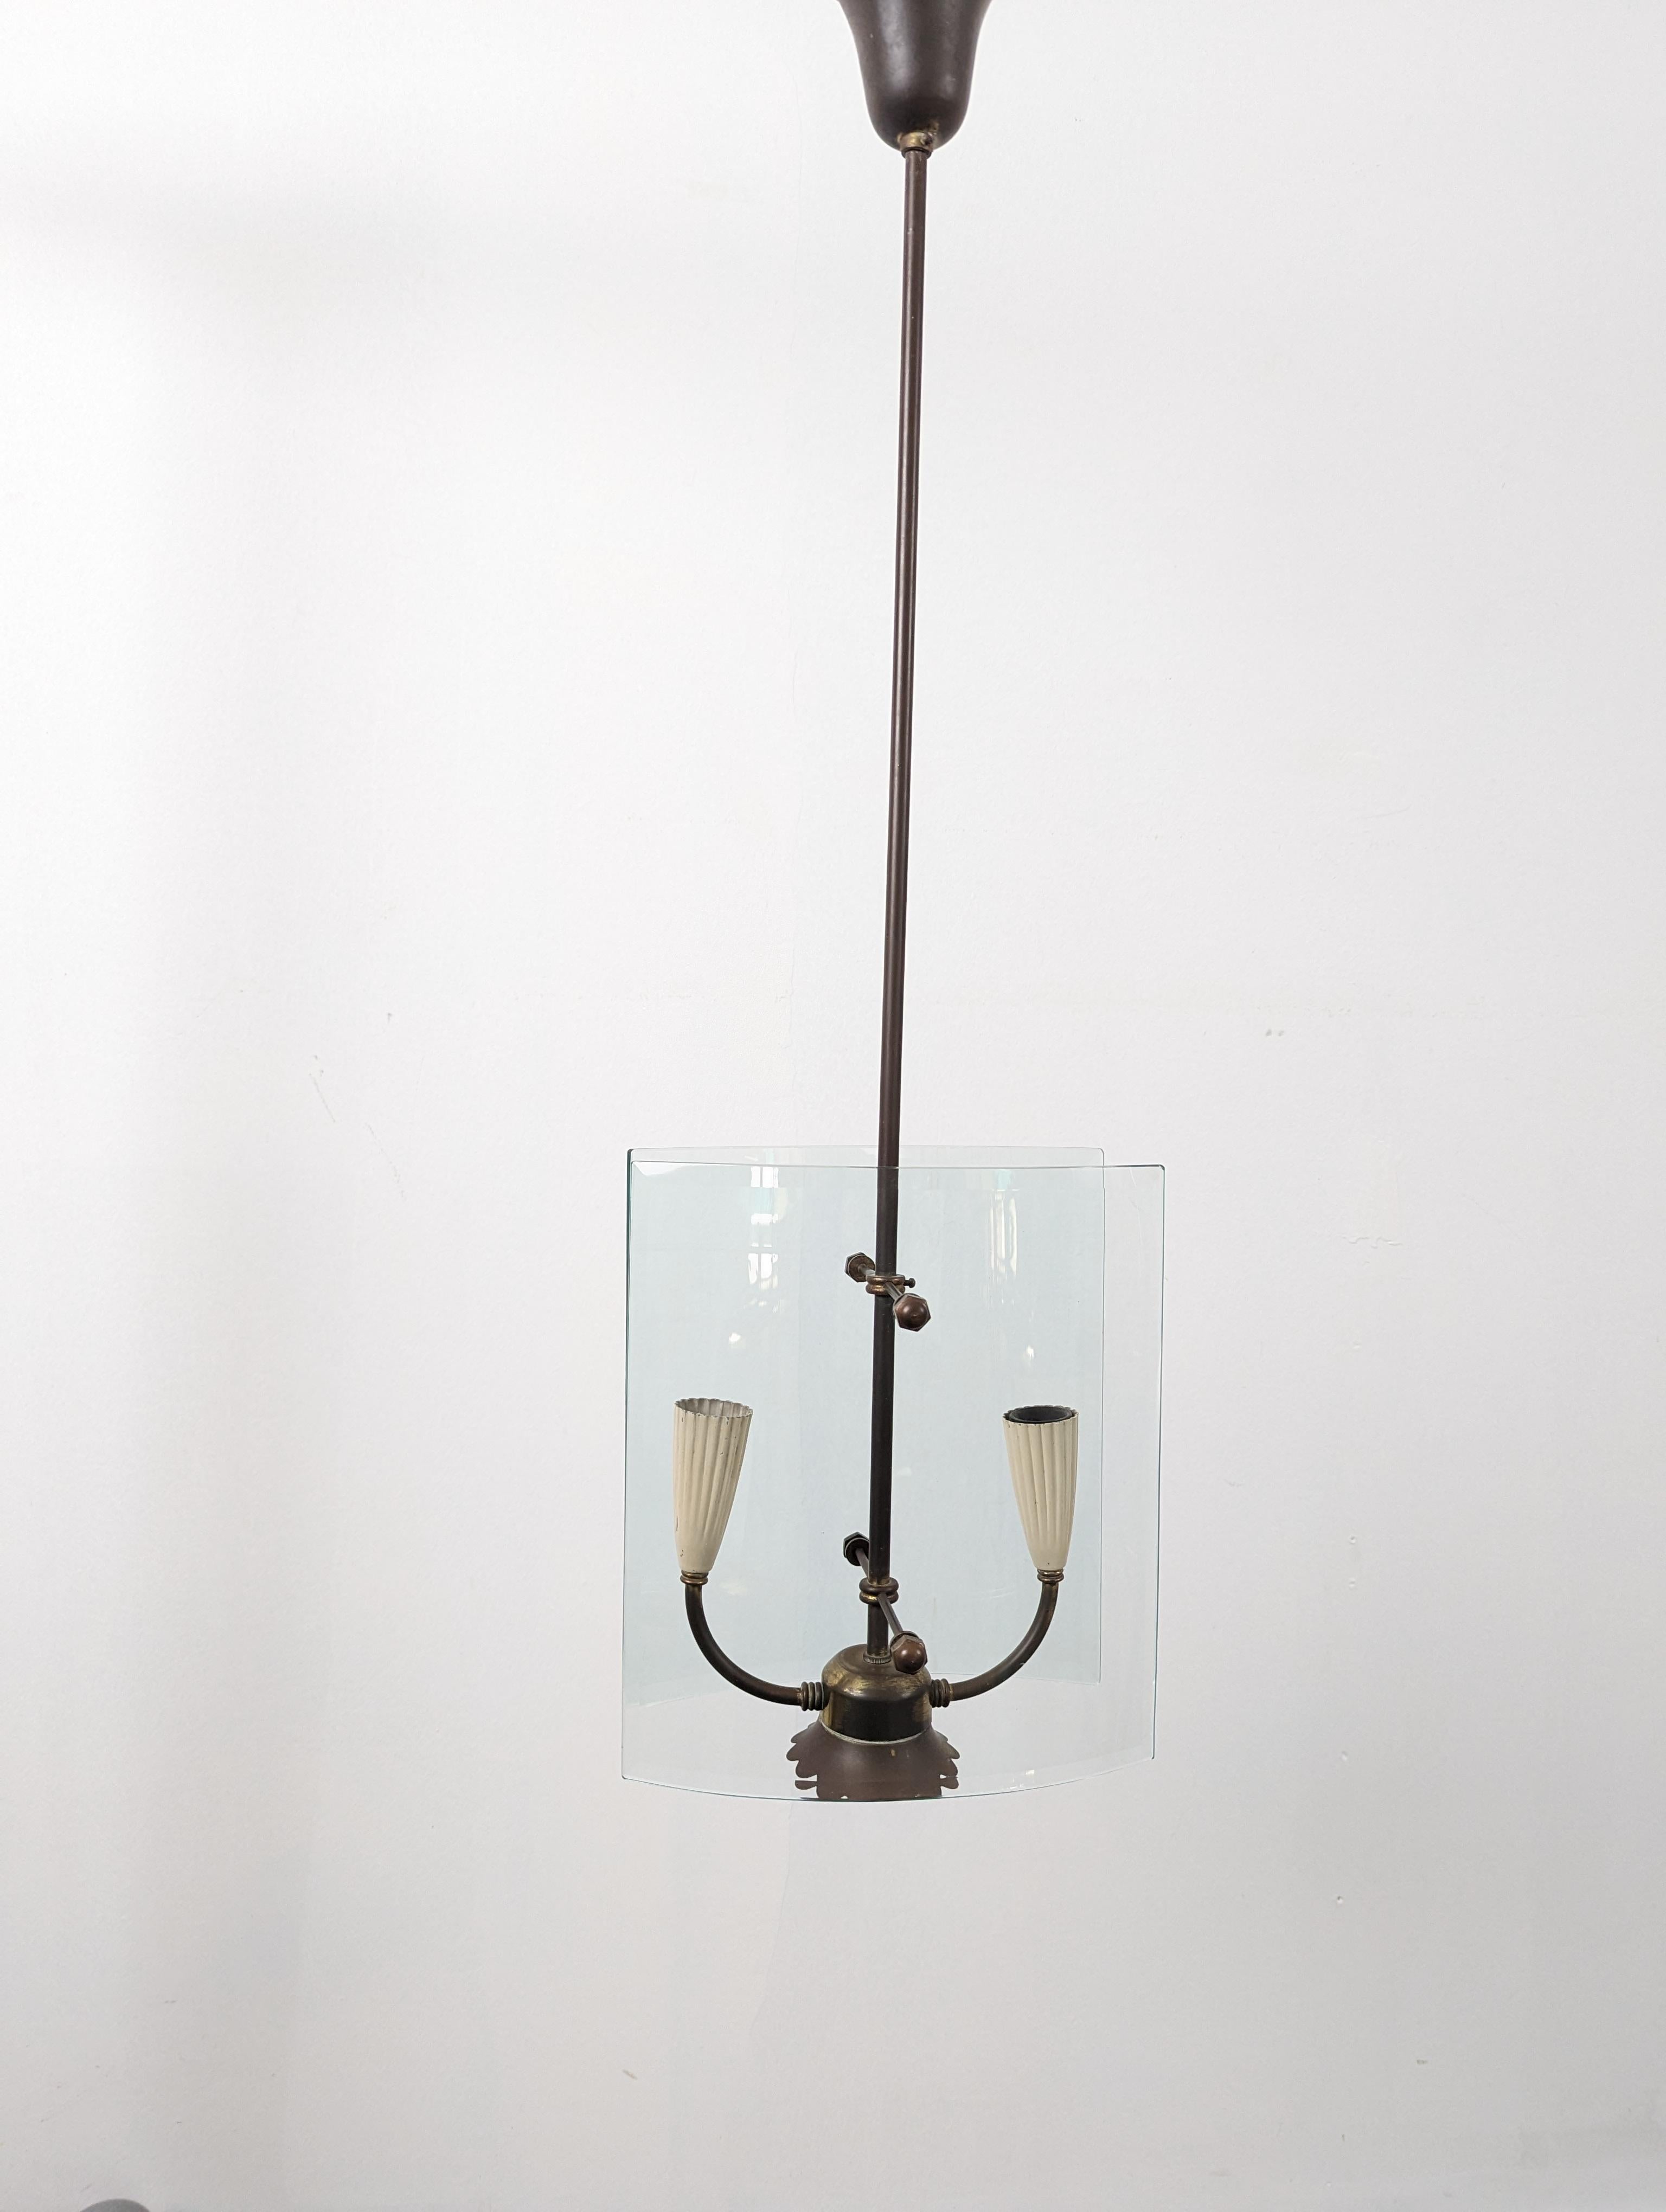 Élégante lampe de designer italienne du milieu du siècle, conçue par Pietro Chiesa et fabriquée par Fontana Arte en Italie, dans les années 1940. Le luminaire est composé de deux panneaux de verre incurvés qui se font face. Ce plafonnier est un